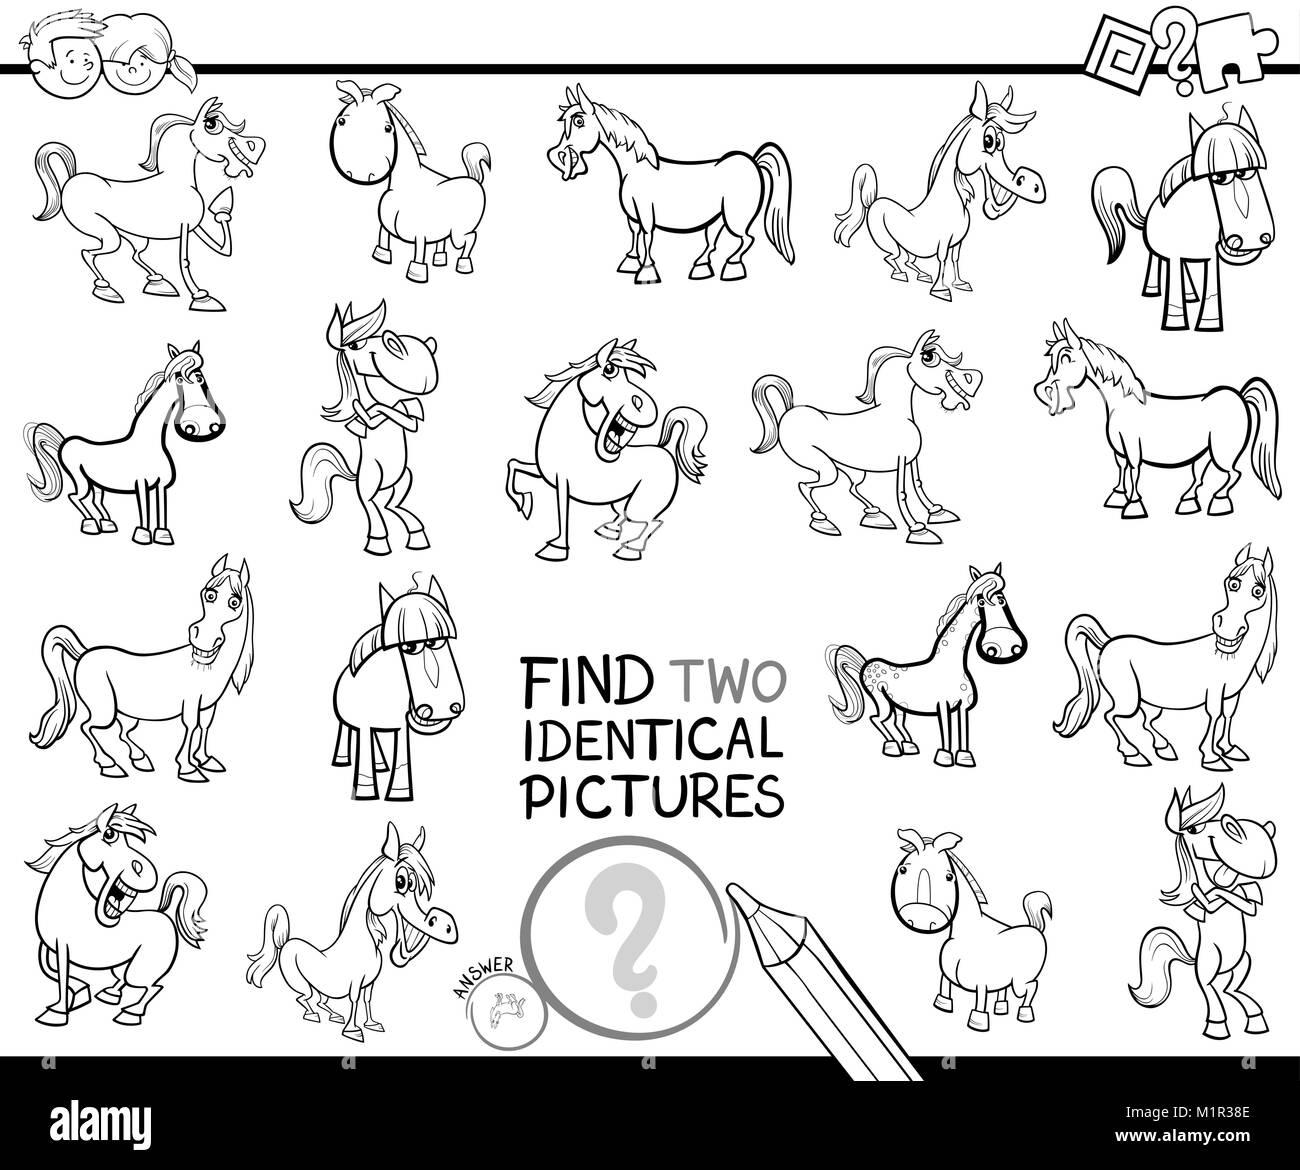 Schwarze und Weiße Cartoon Illustration, zwei identische Bilder pädagogische Tätigkeit Spiel für Kinder mit Pferden Farm Animal Zeichen Farbe Stock Vektor